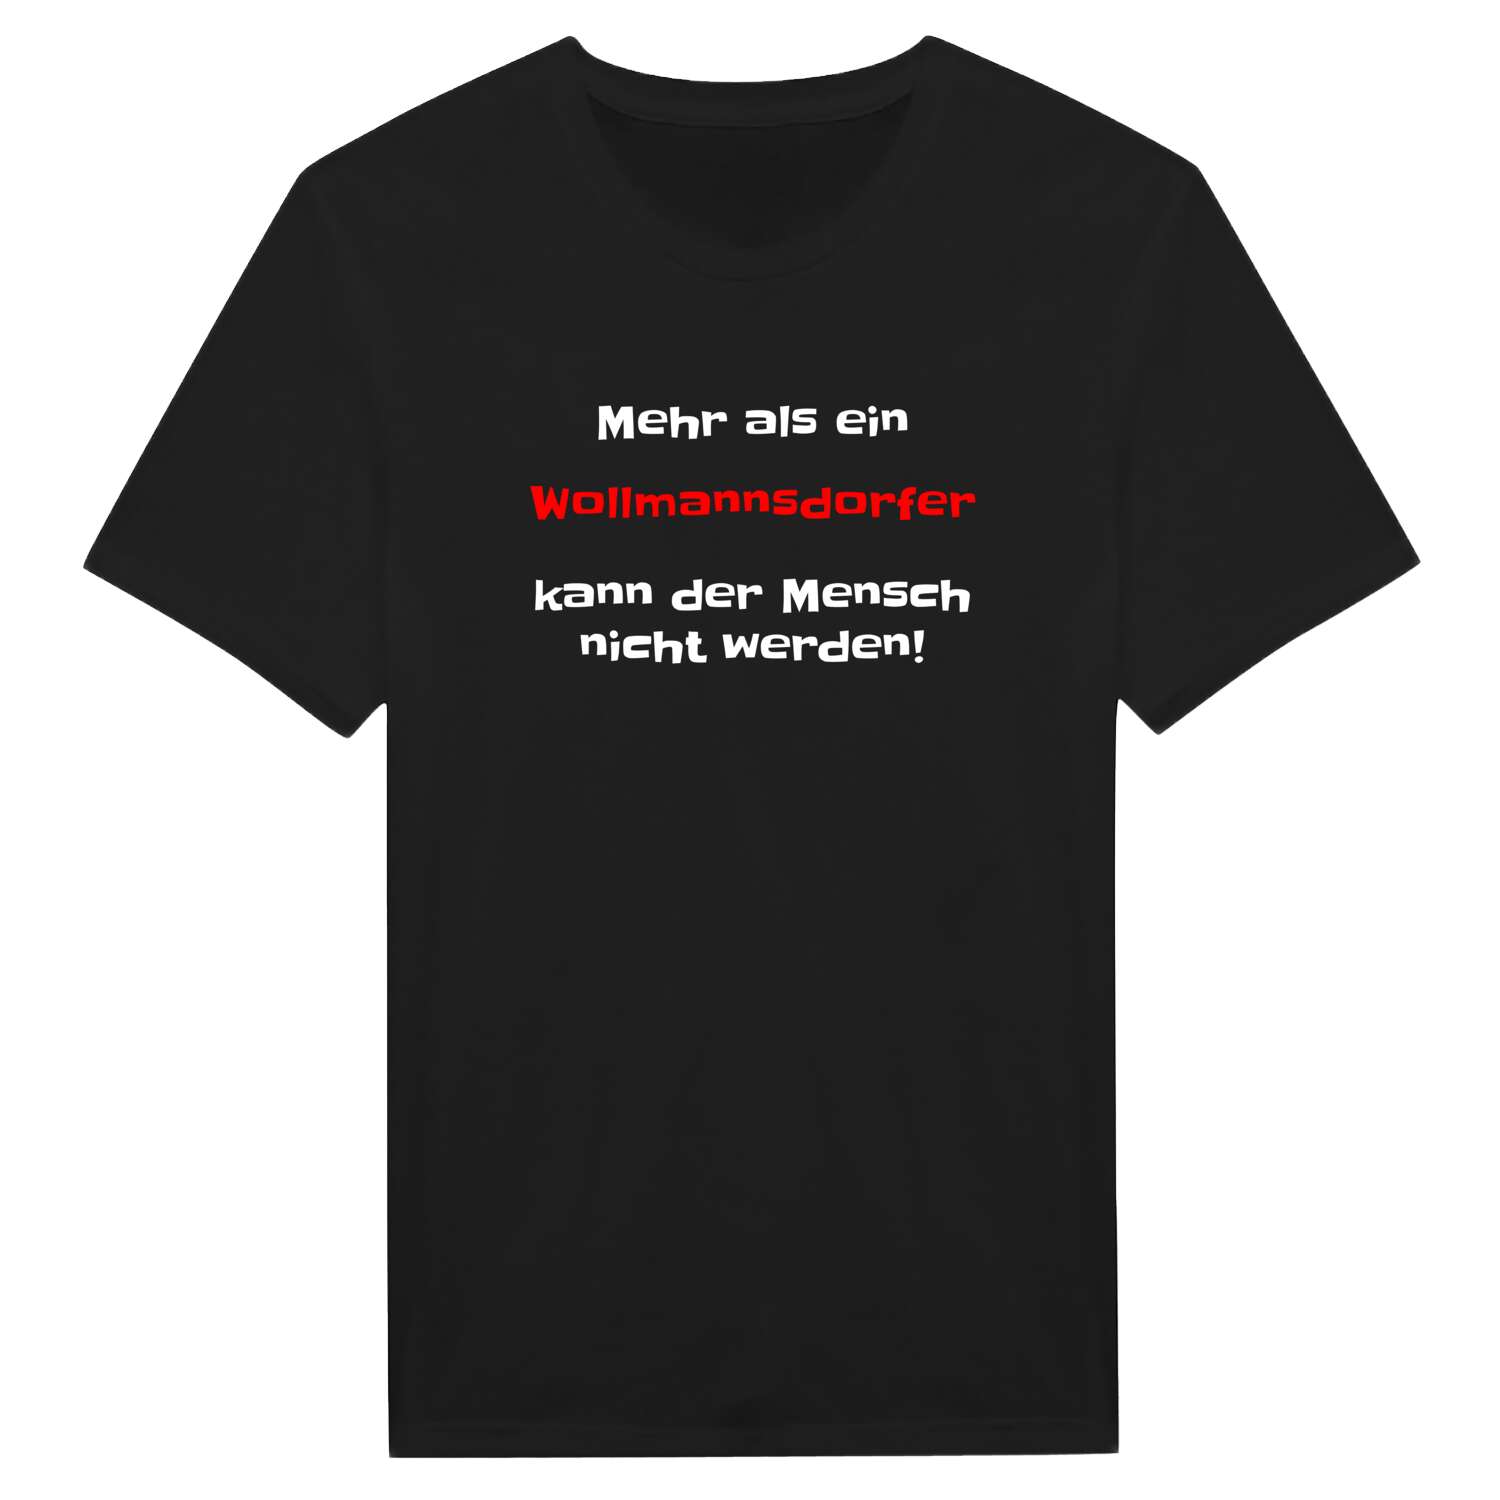 Wollmannsdorf T-Shirt »Mehr als ein«